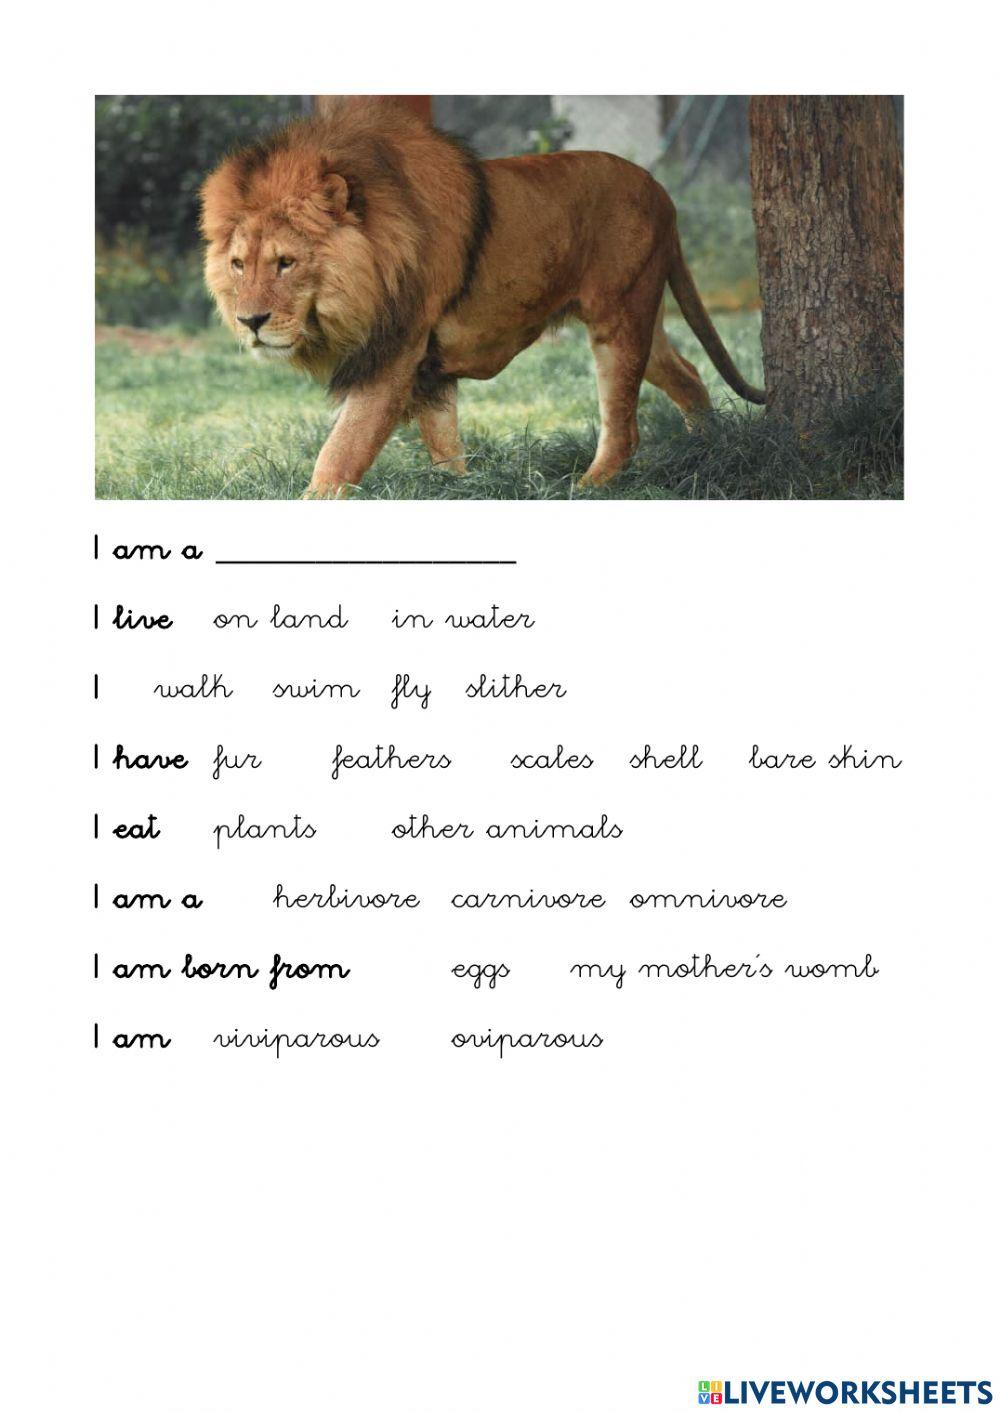 Lion's file